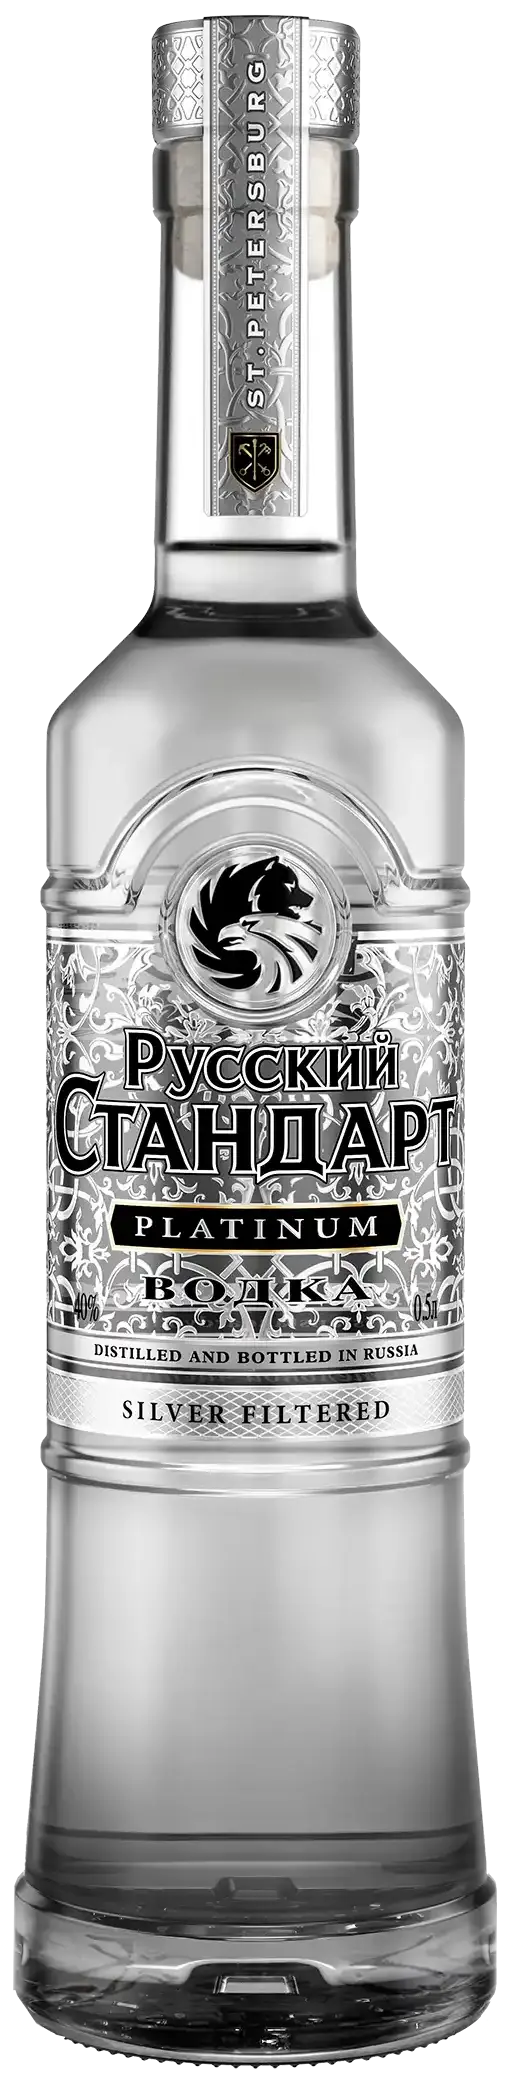 Русский Стандарт Платинум (Russian Standard Platinum)